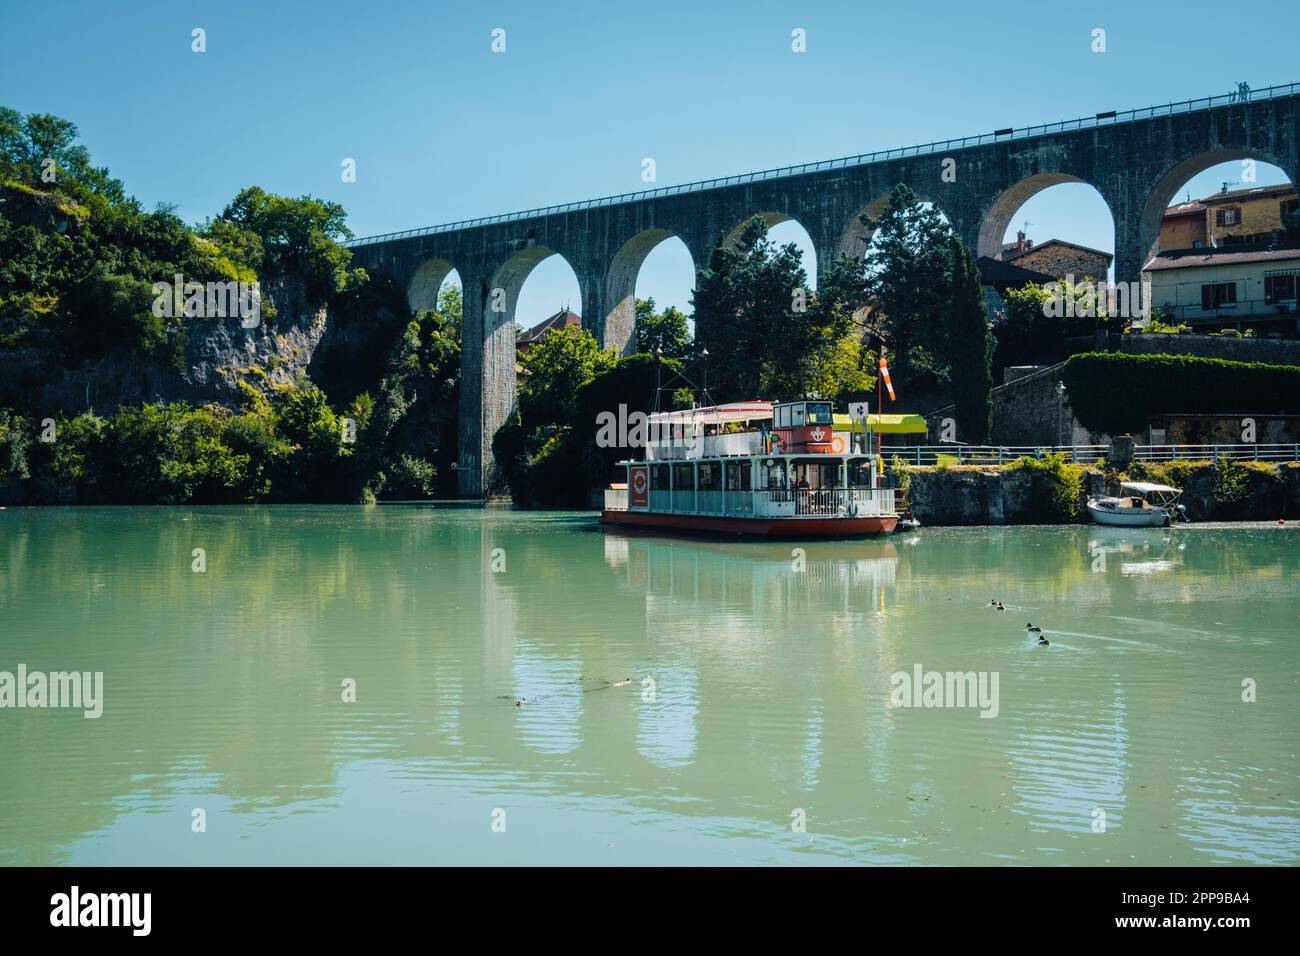 L'aqueduc enjambant la Bourne et un bateau à aubes dans le village de Saint Nazaire en Royans, dans les Alpes françaises (Drôme) Banque D'Images